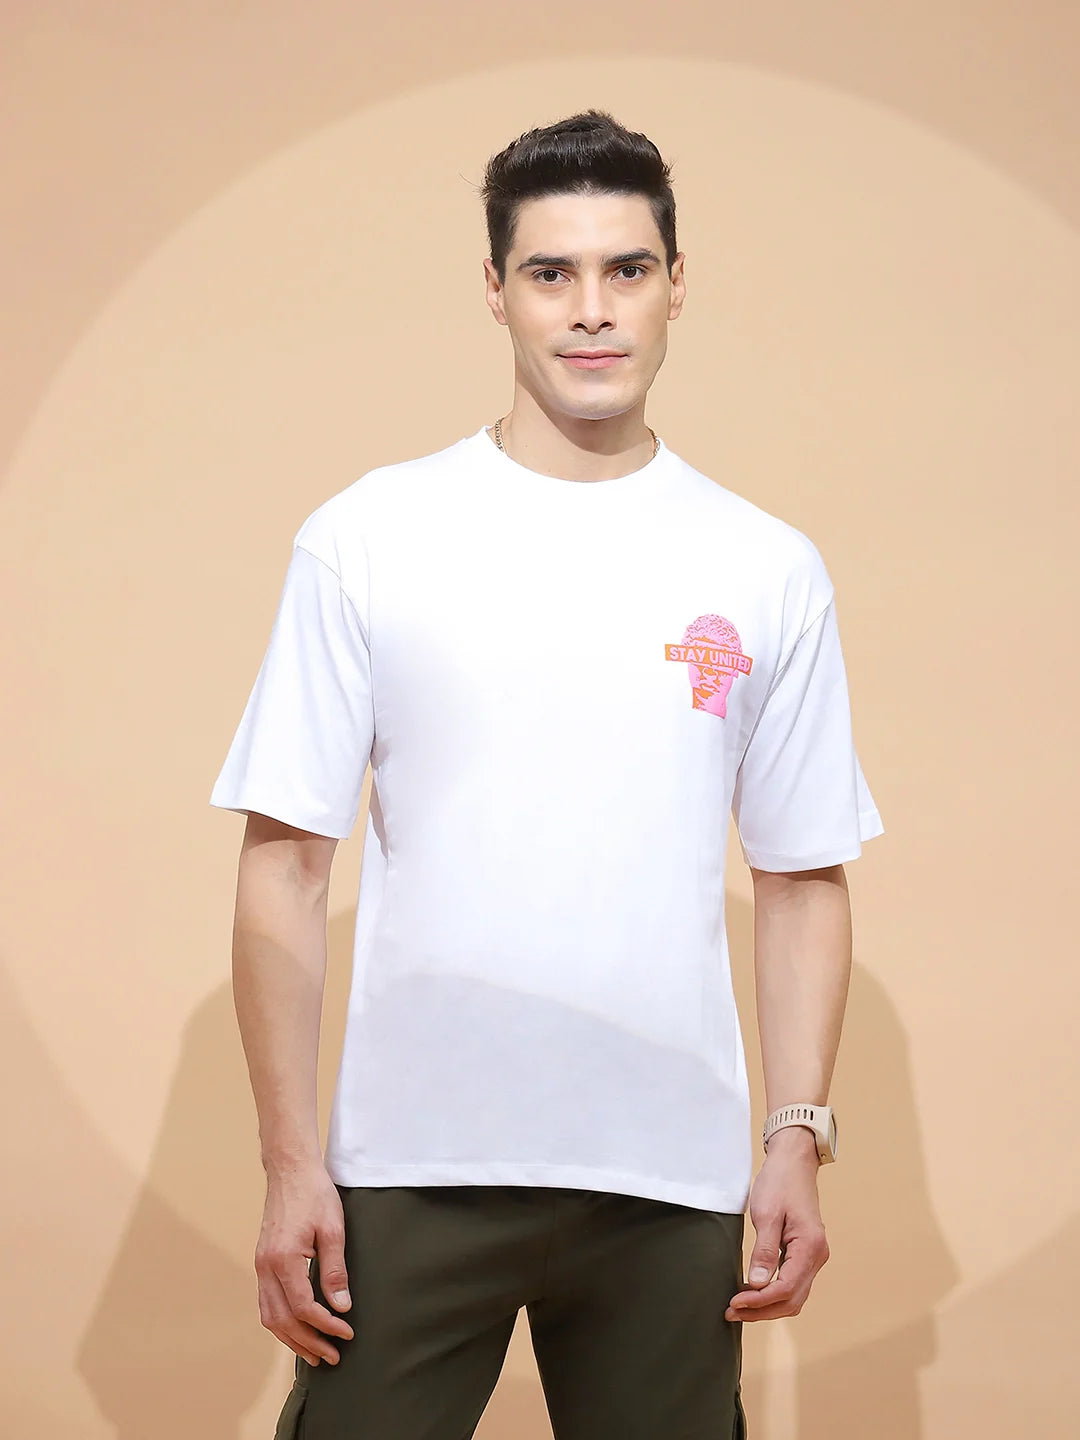 White Cotton Regular Fit T-Shirt For Men